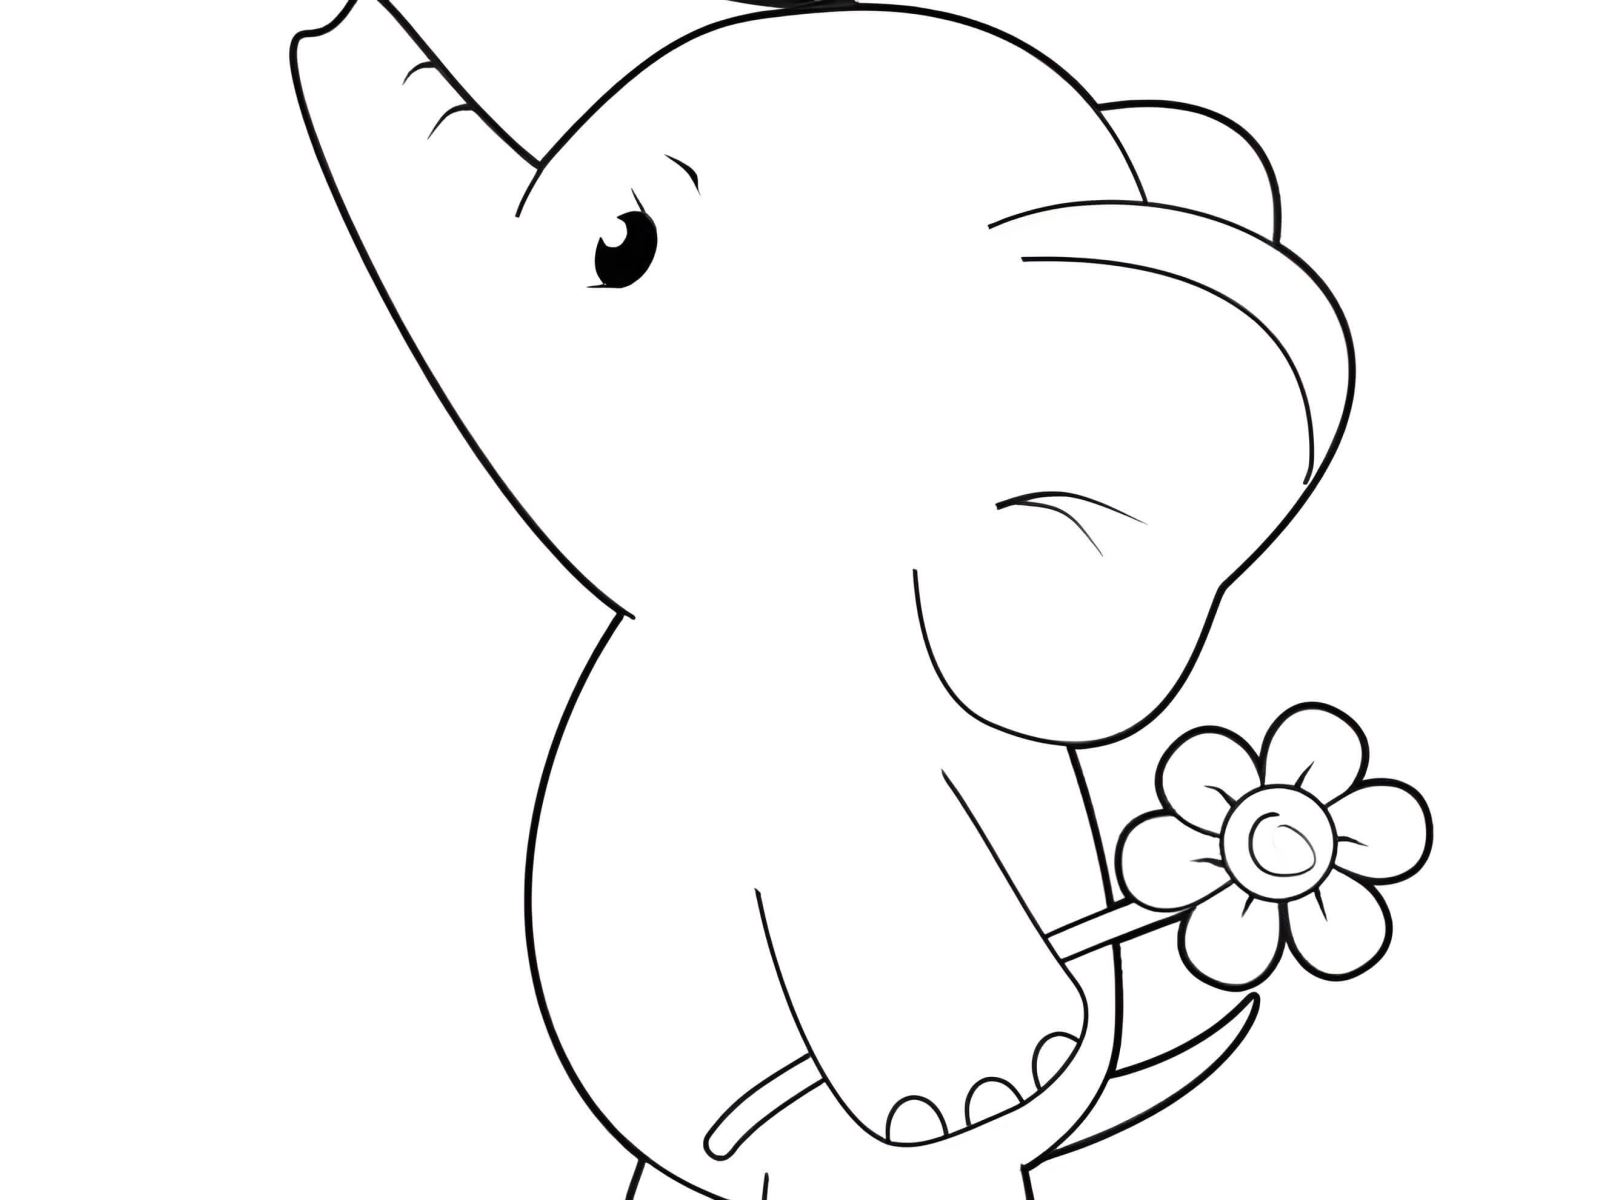 30+ Bức tranh tô màu con voi đẹp cho bé tập tô - Hương.Vn